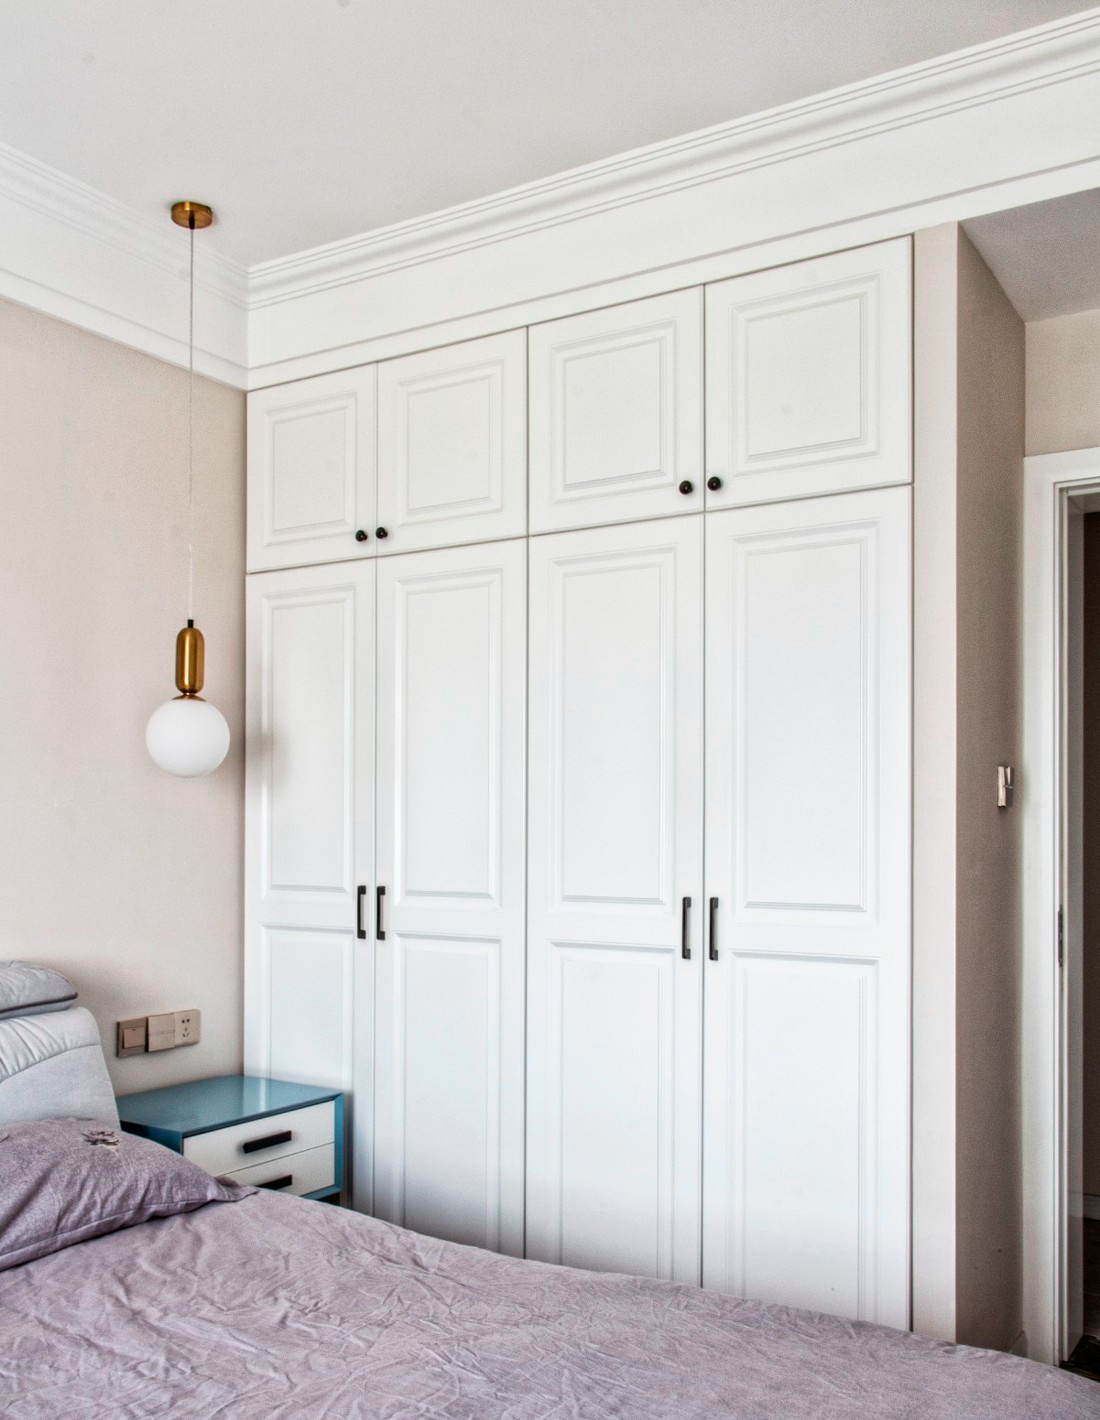 主卧衣柜也是采用简美风格的白色门板,再配一个北欧轻奢风的床头吊灯